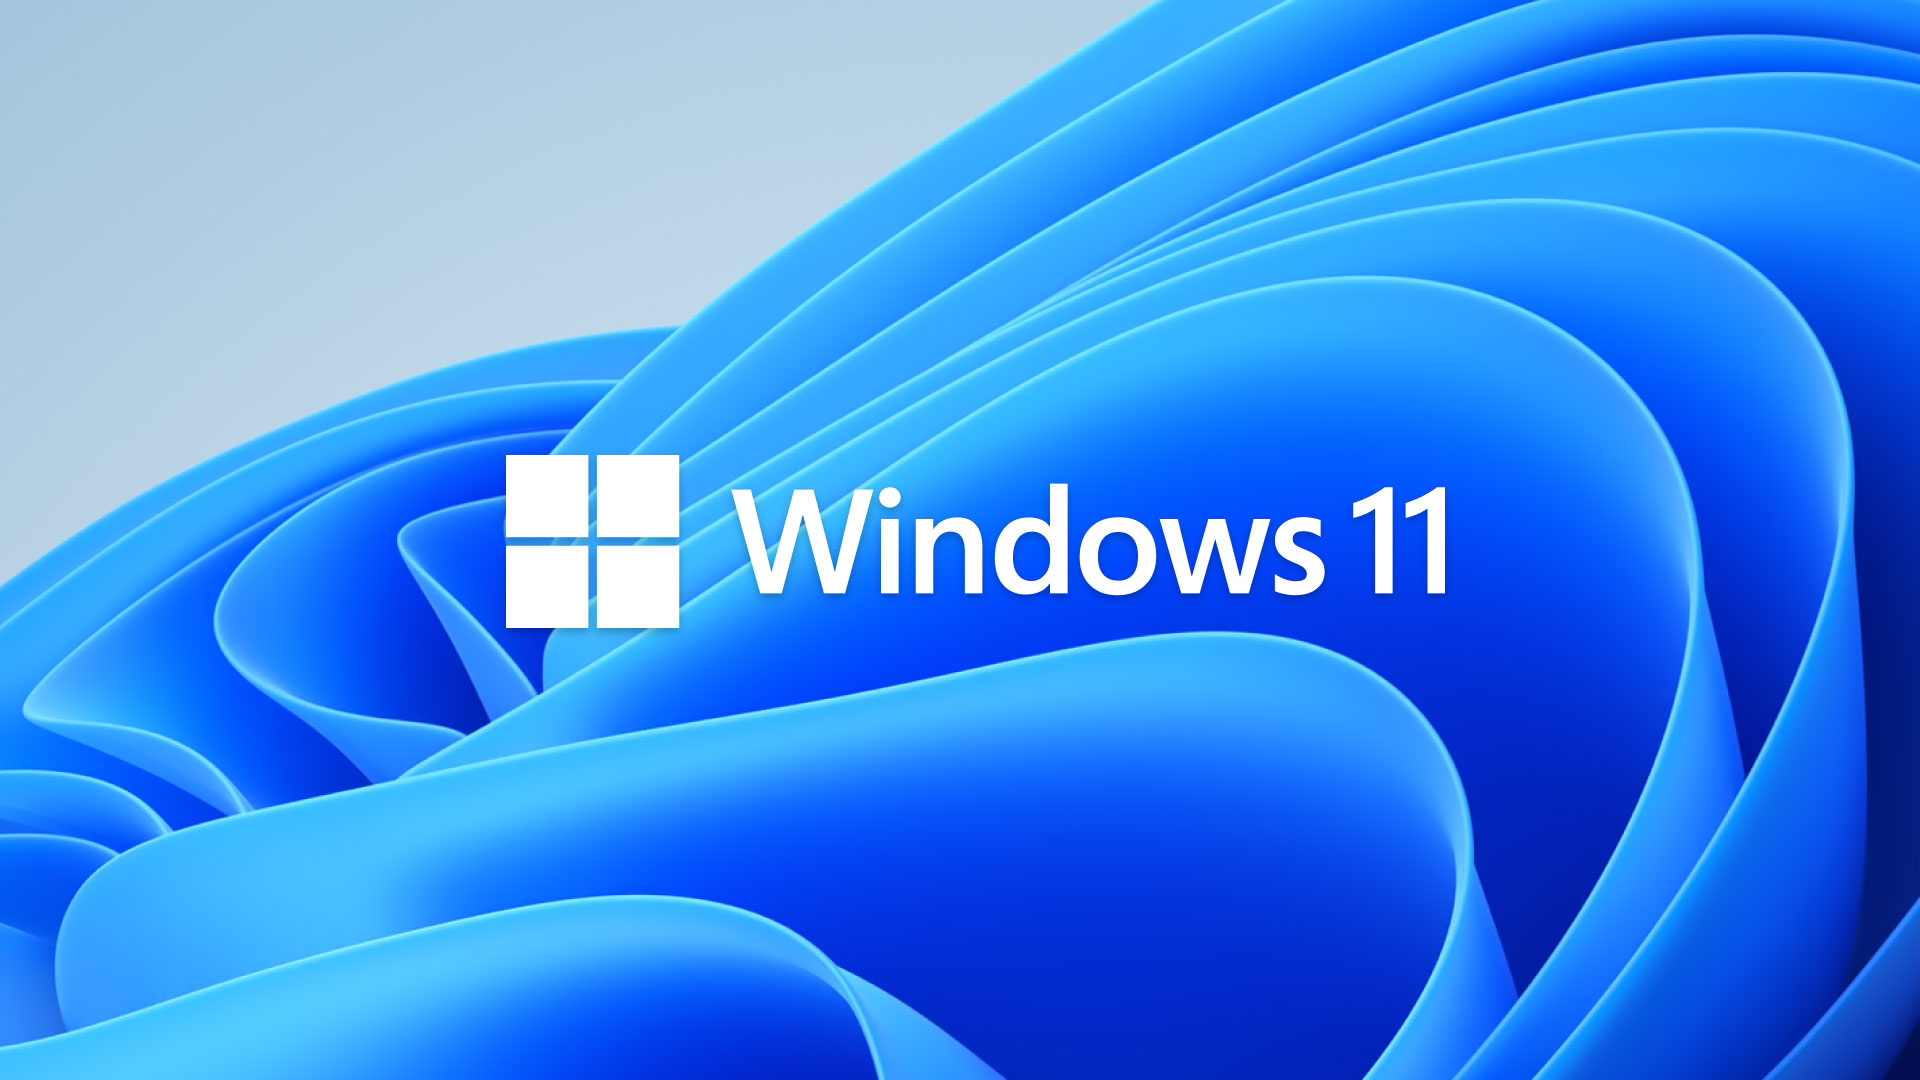 Windows 11 installer download adobe pdf editor mac free download